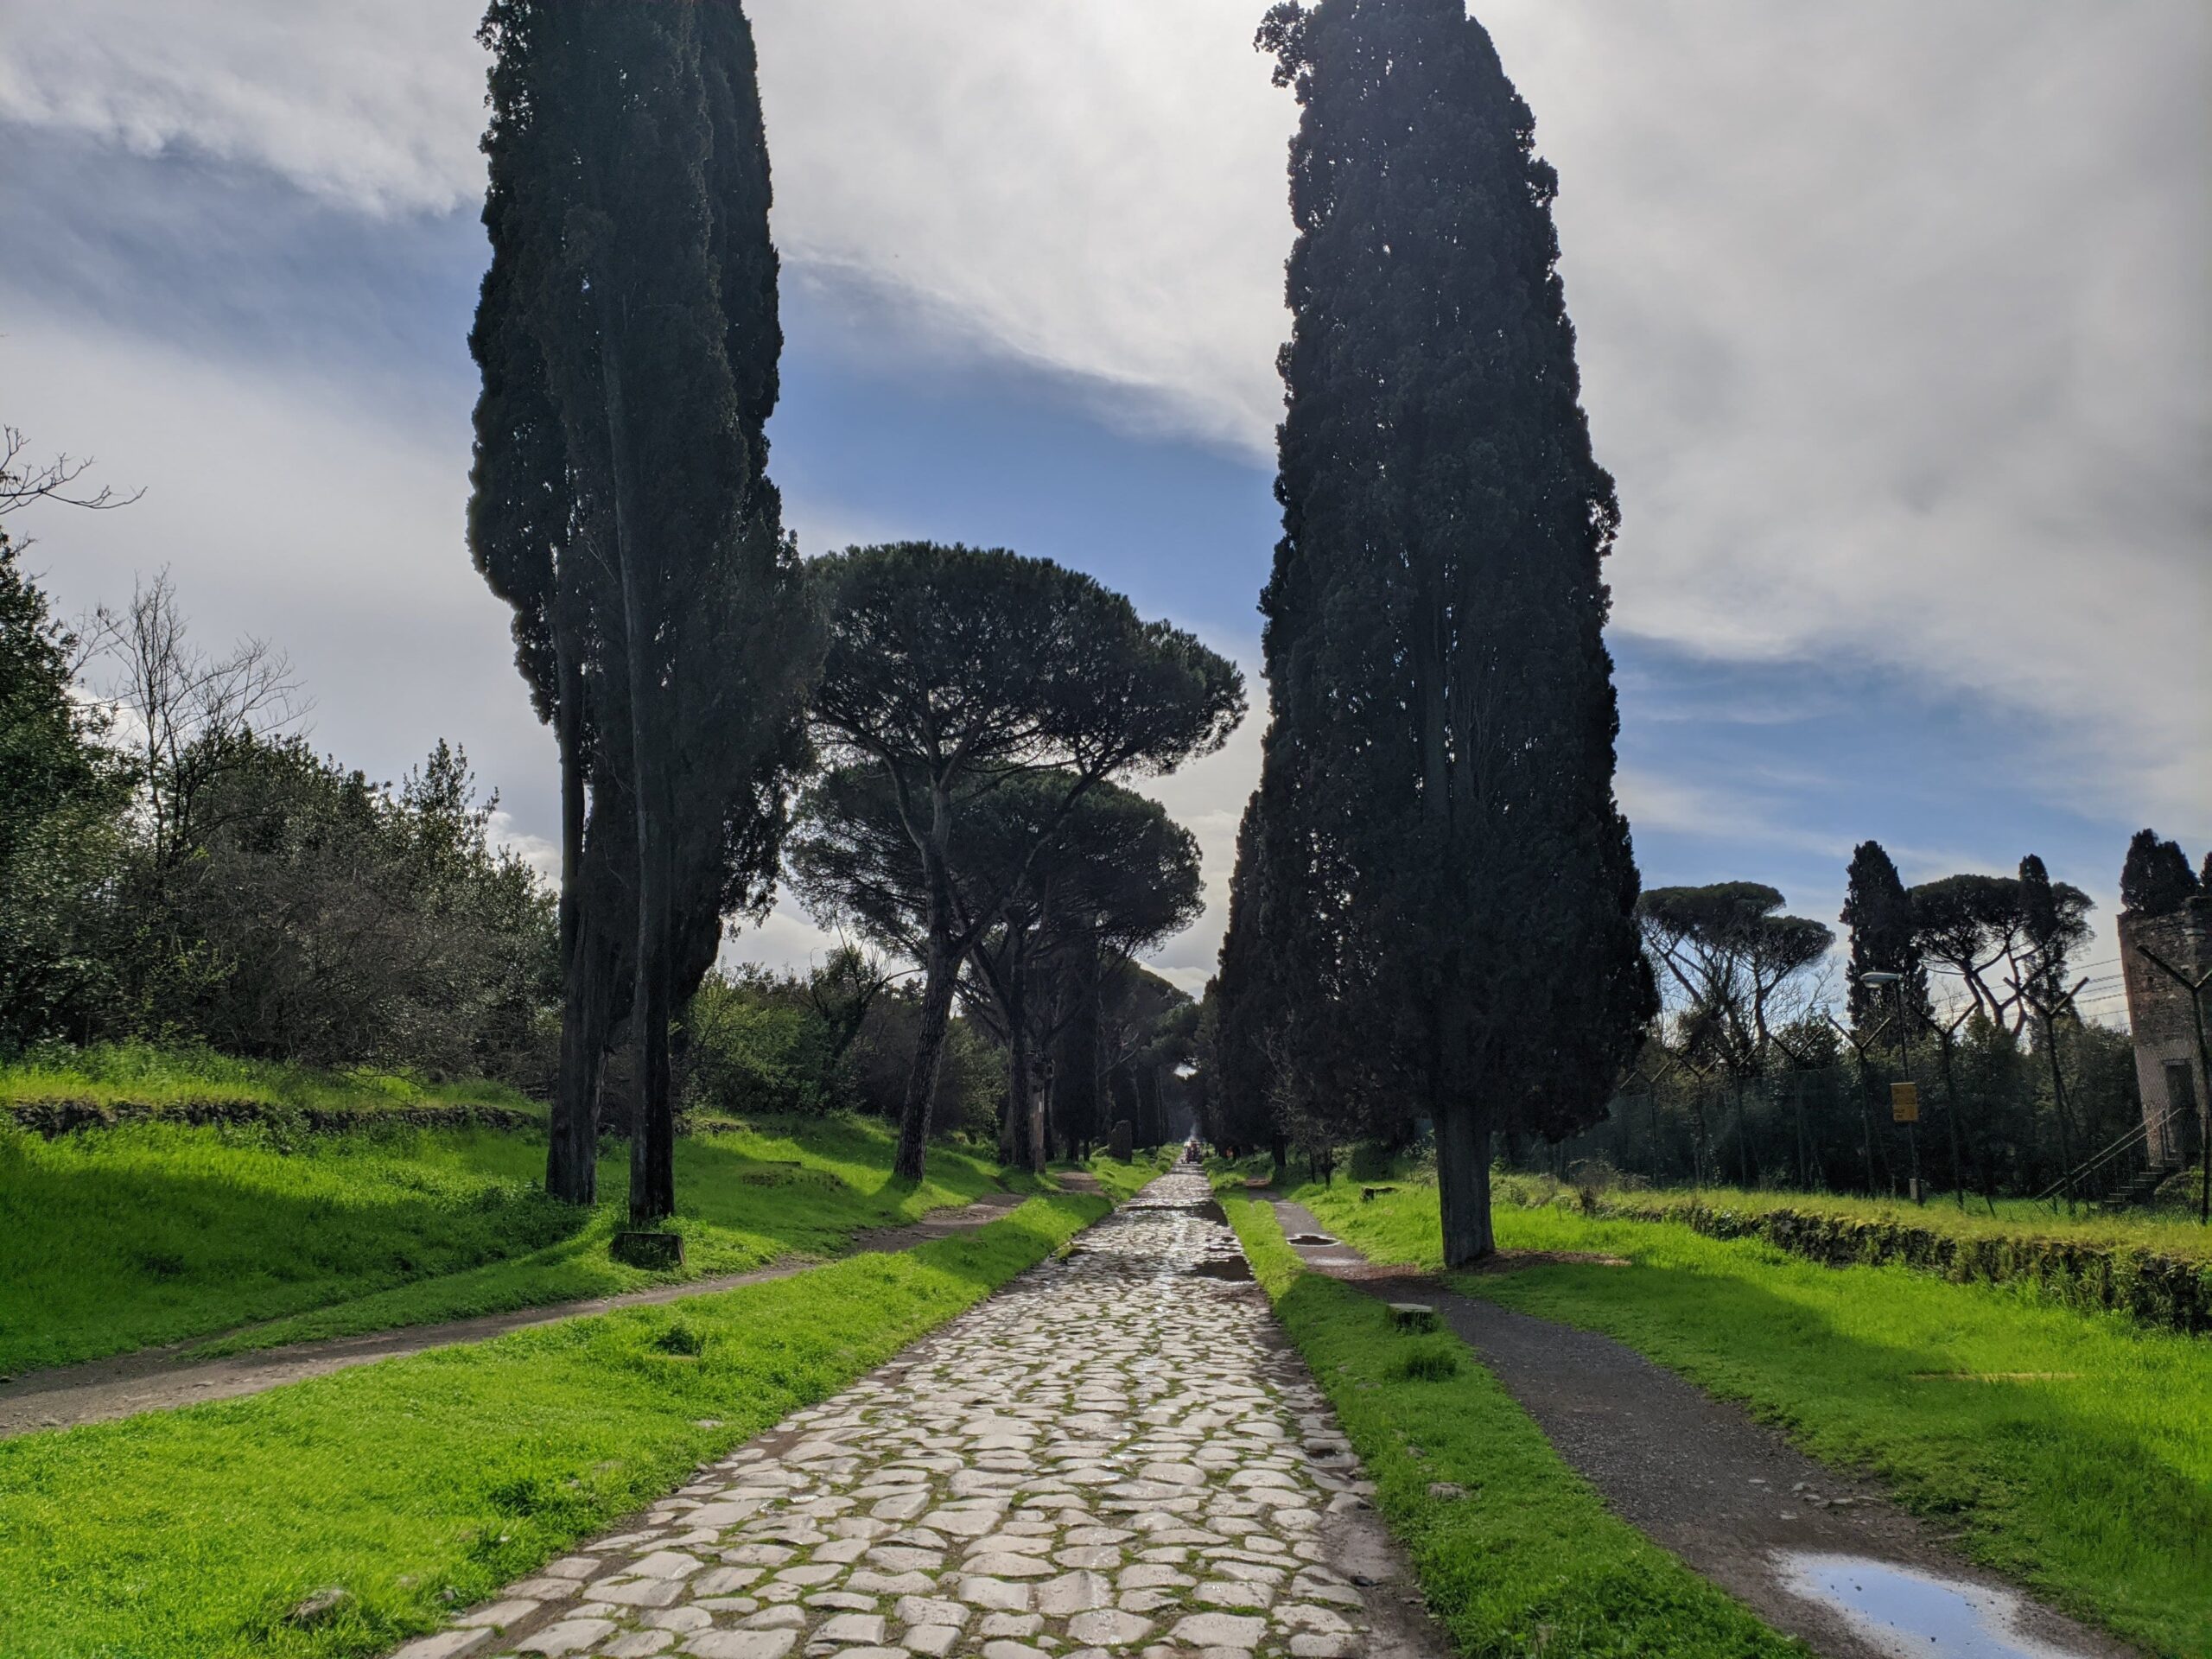 Foto da Via Appia, com sua calçamento de pedras largas, grama ao redor, e ciprestes típicos da Itália.